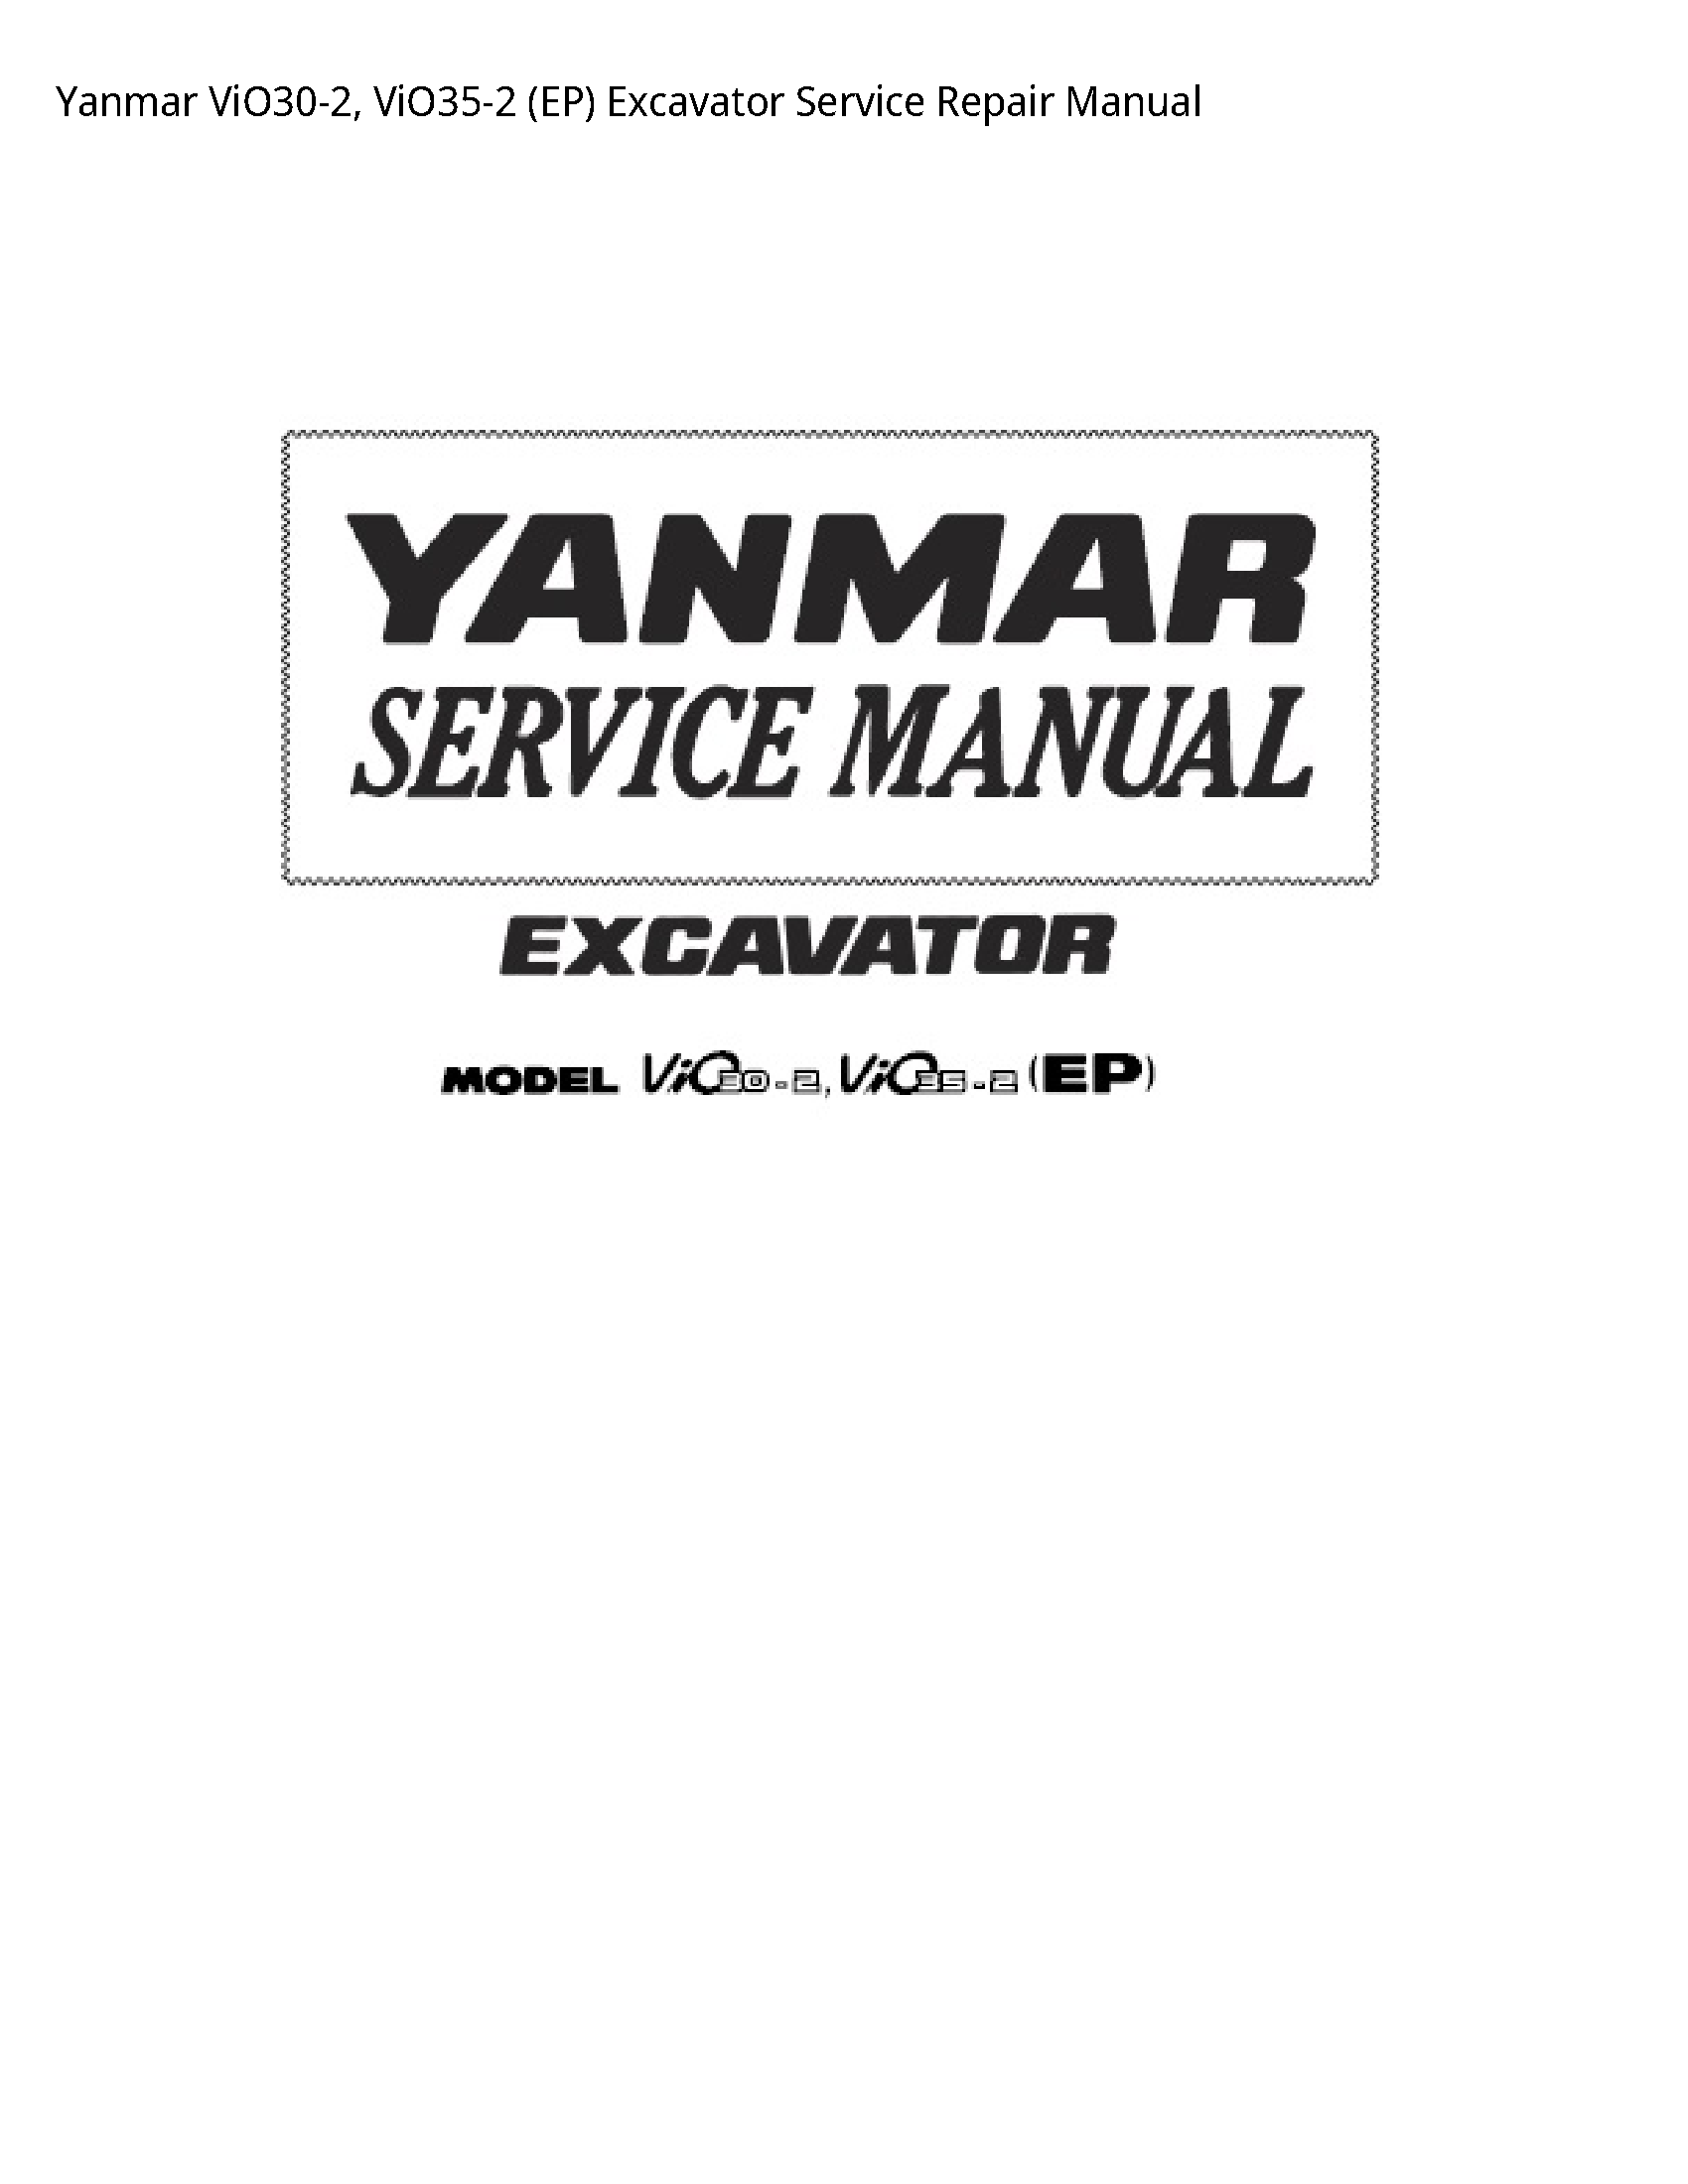 Yanmar ViO30-2 (EP) Excavator manual